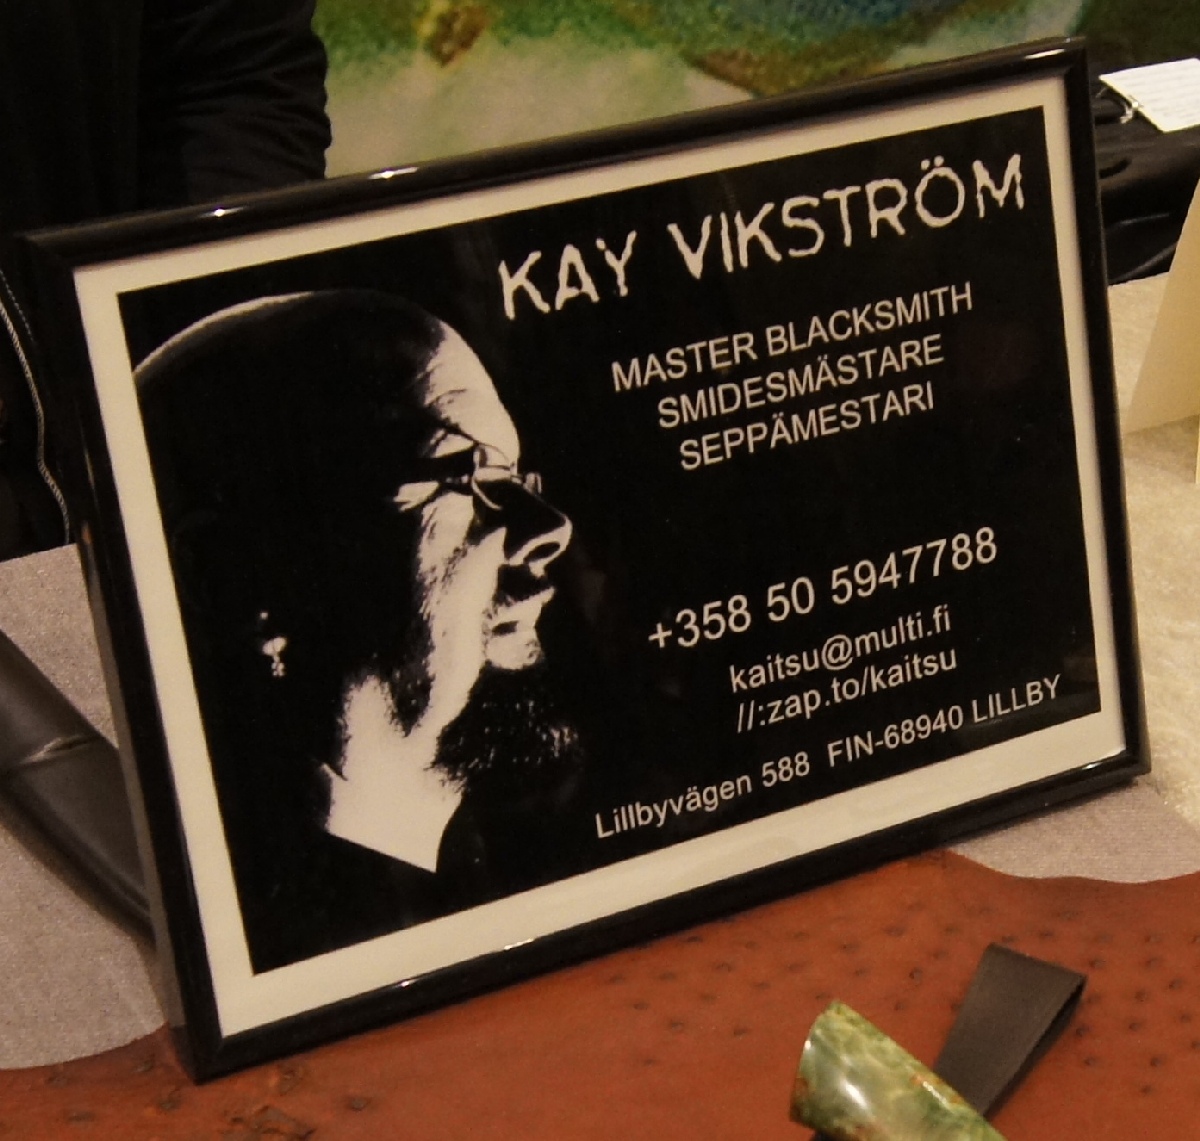 Kay Vikström. Helsinki Knife Show 2012.